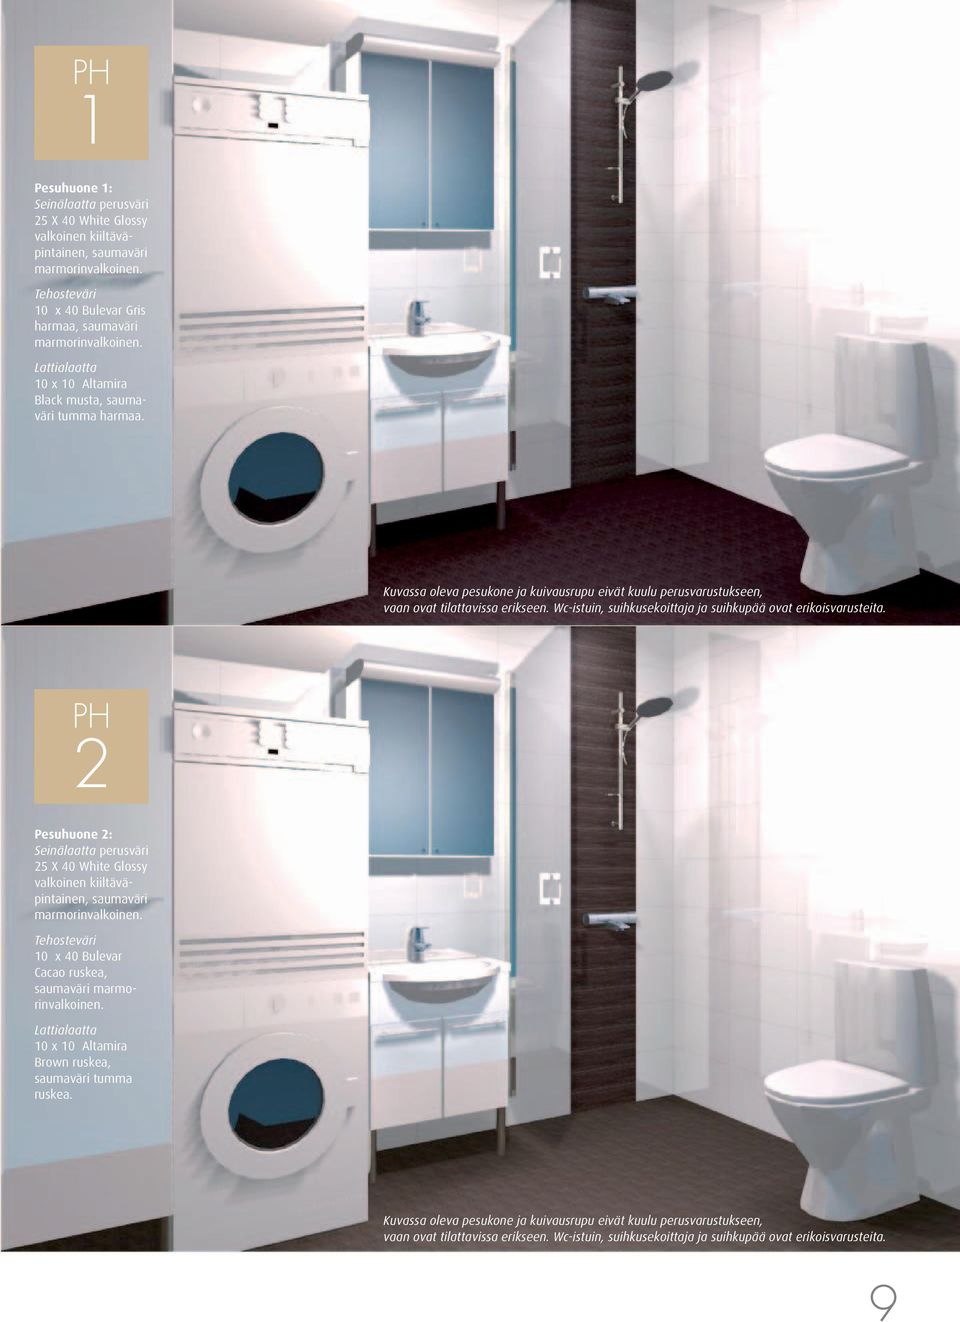 Wc-istuin, suihkusekoittaja ja suihkupää ovat erikoisvarusteita. PH 2 Pesuhuone 2: Seinälaatta perusväri 25 X 40 White Glossy valkoinen kiiltäväpintainen, saumaväri marmorinvalkoinen.